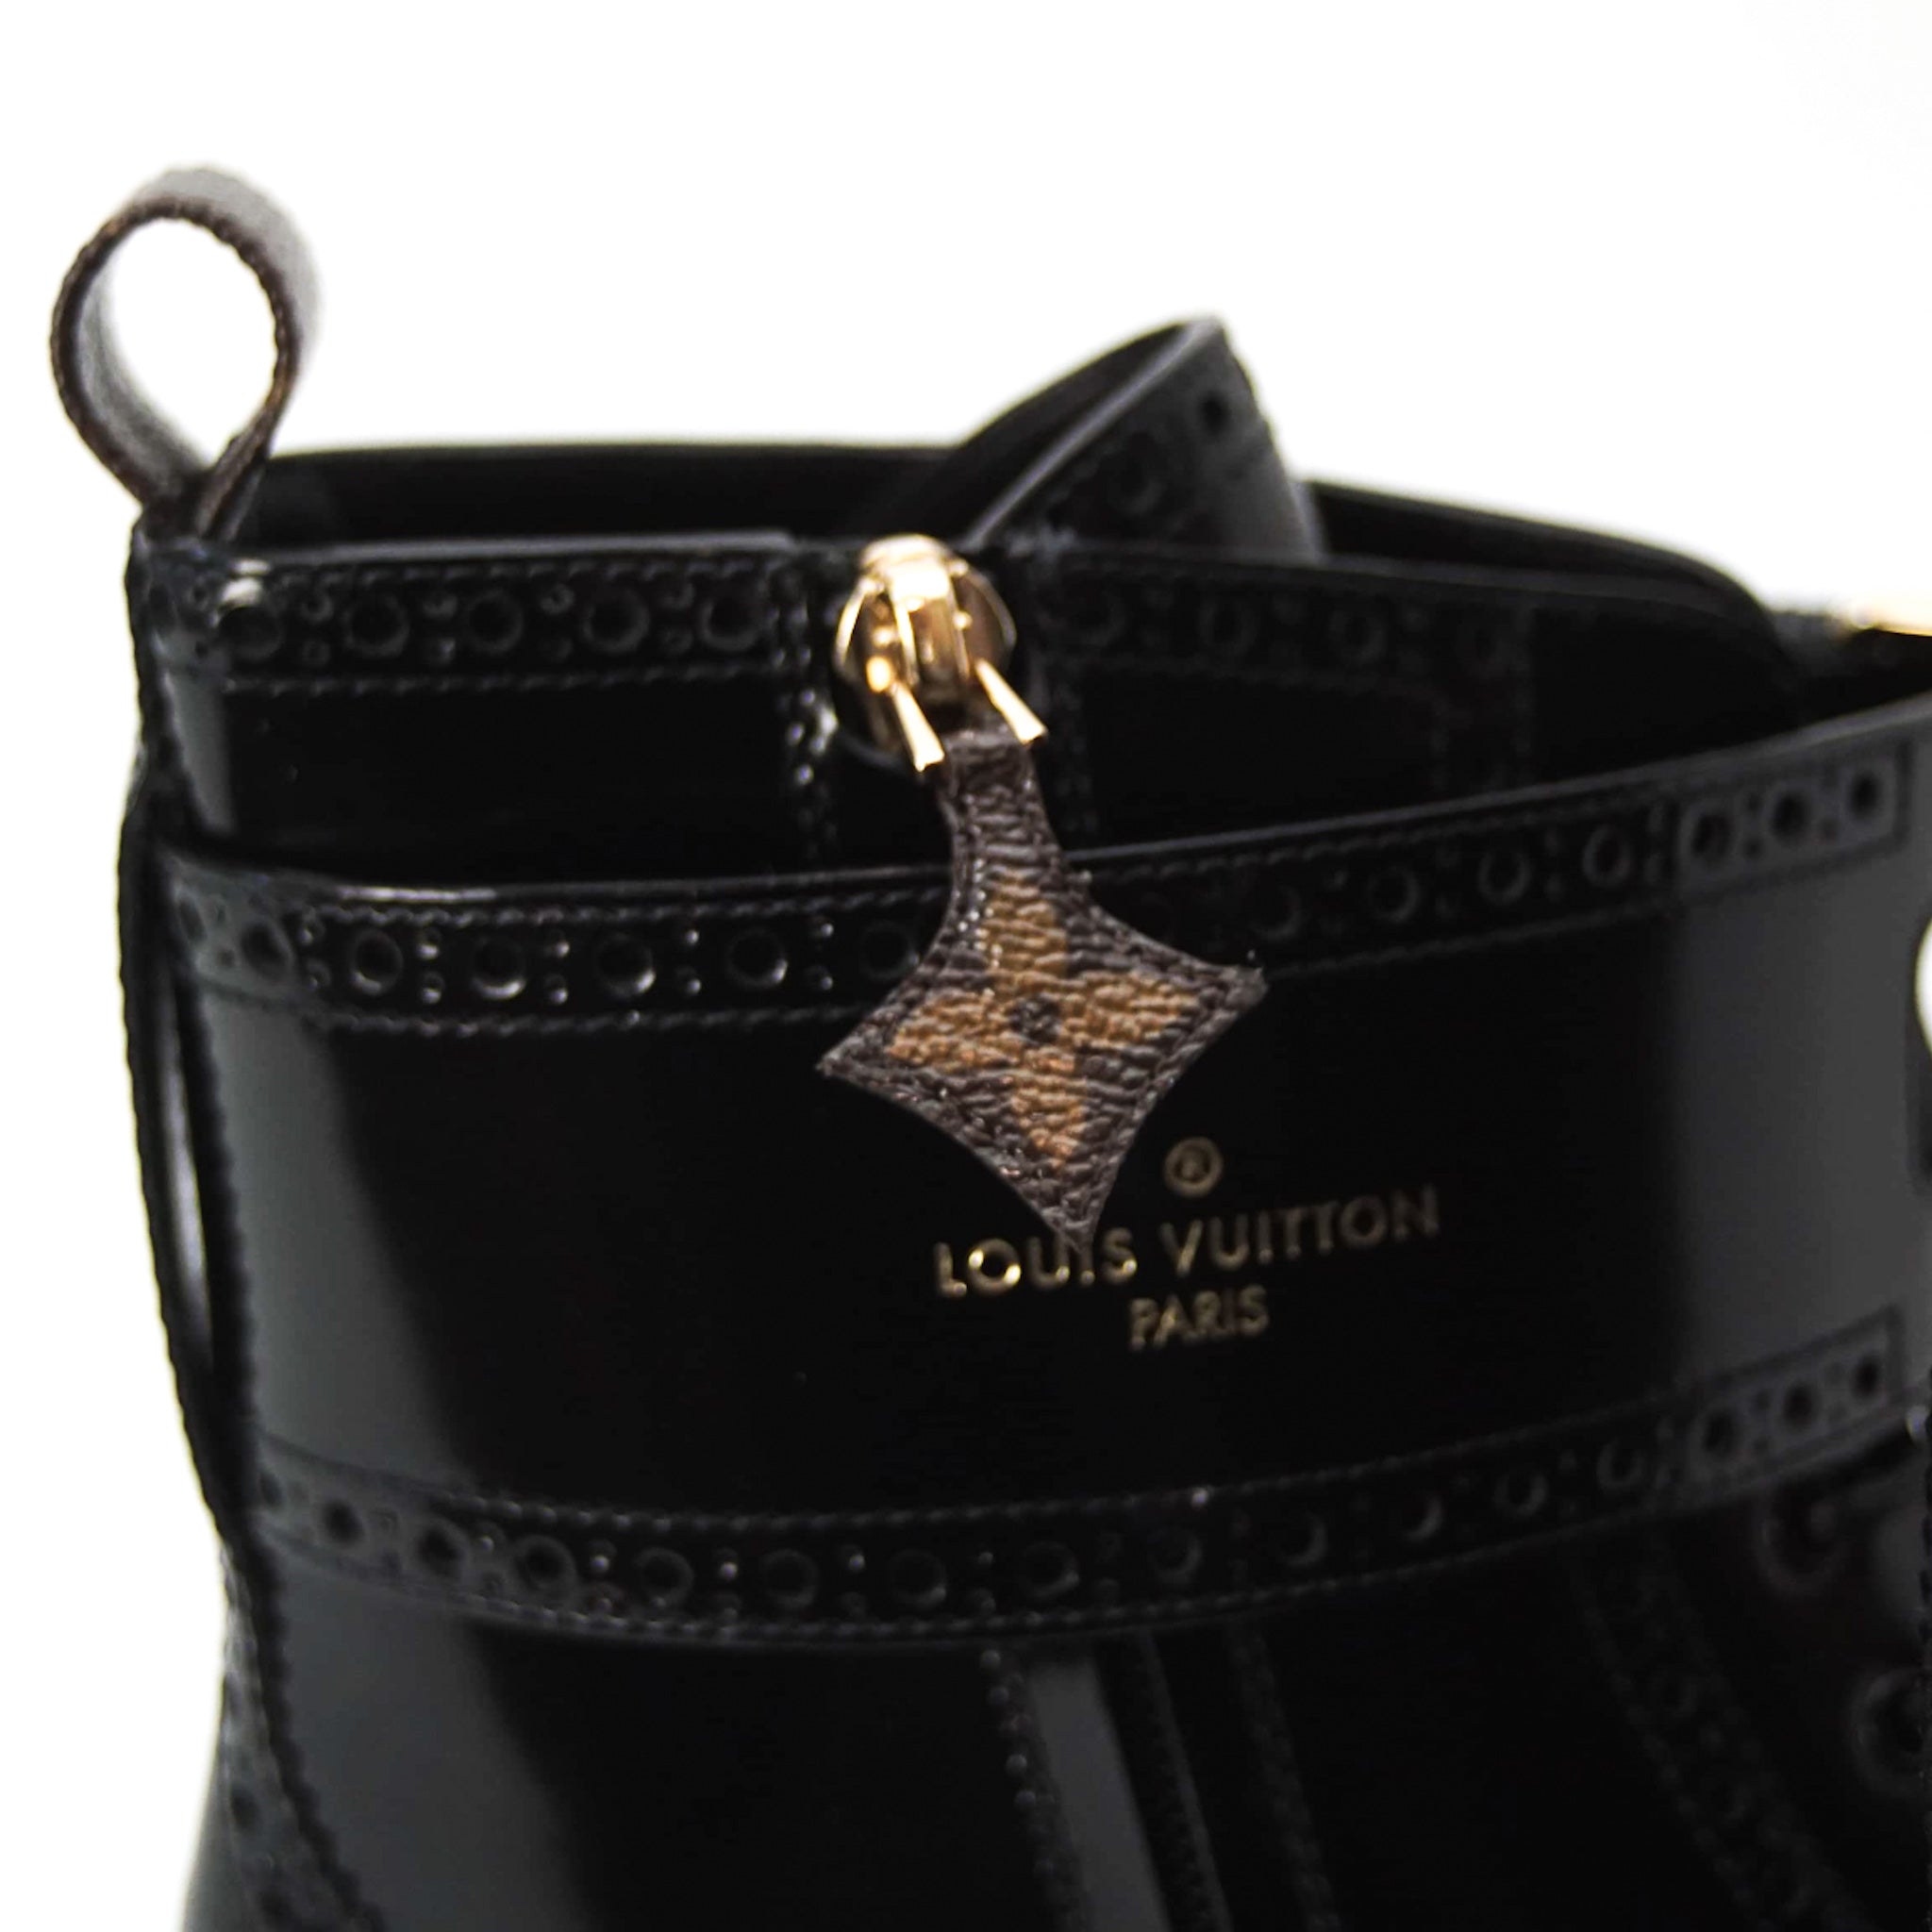 Louis Vuitton Polar Line Boots, Black, 41